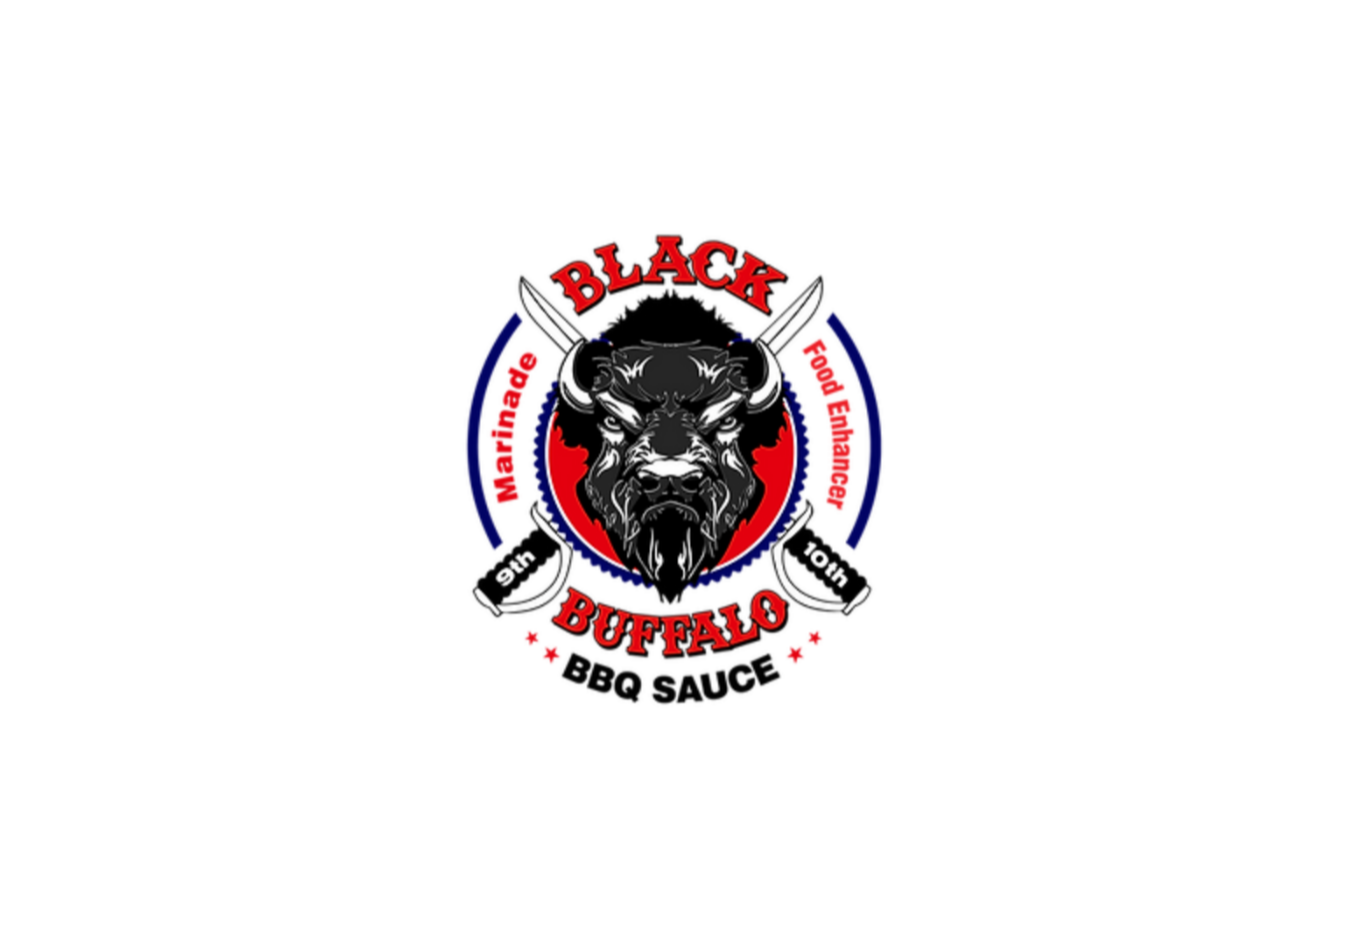 The Black Buffalo Experience - Black Buffalo BBQ & Marinade